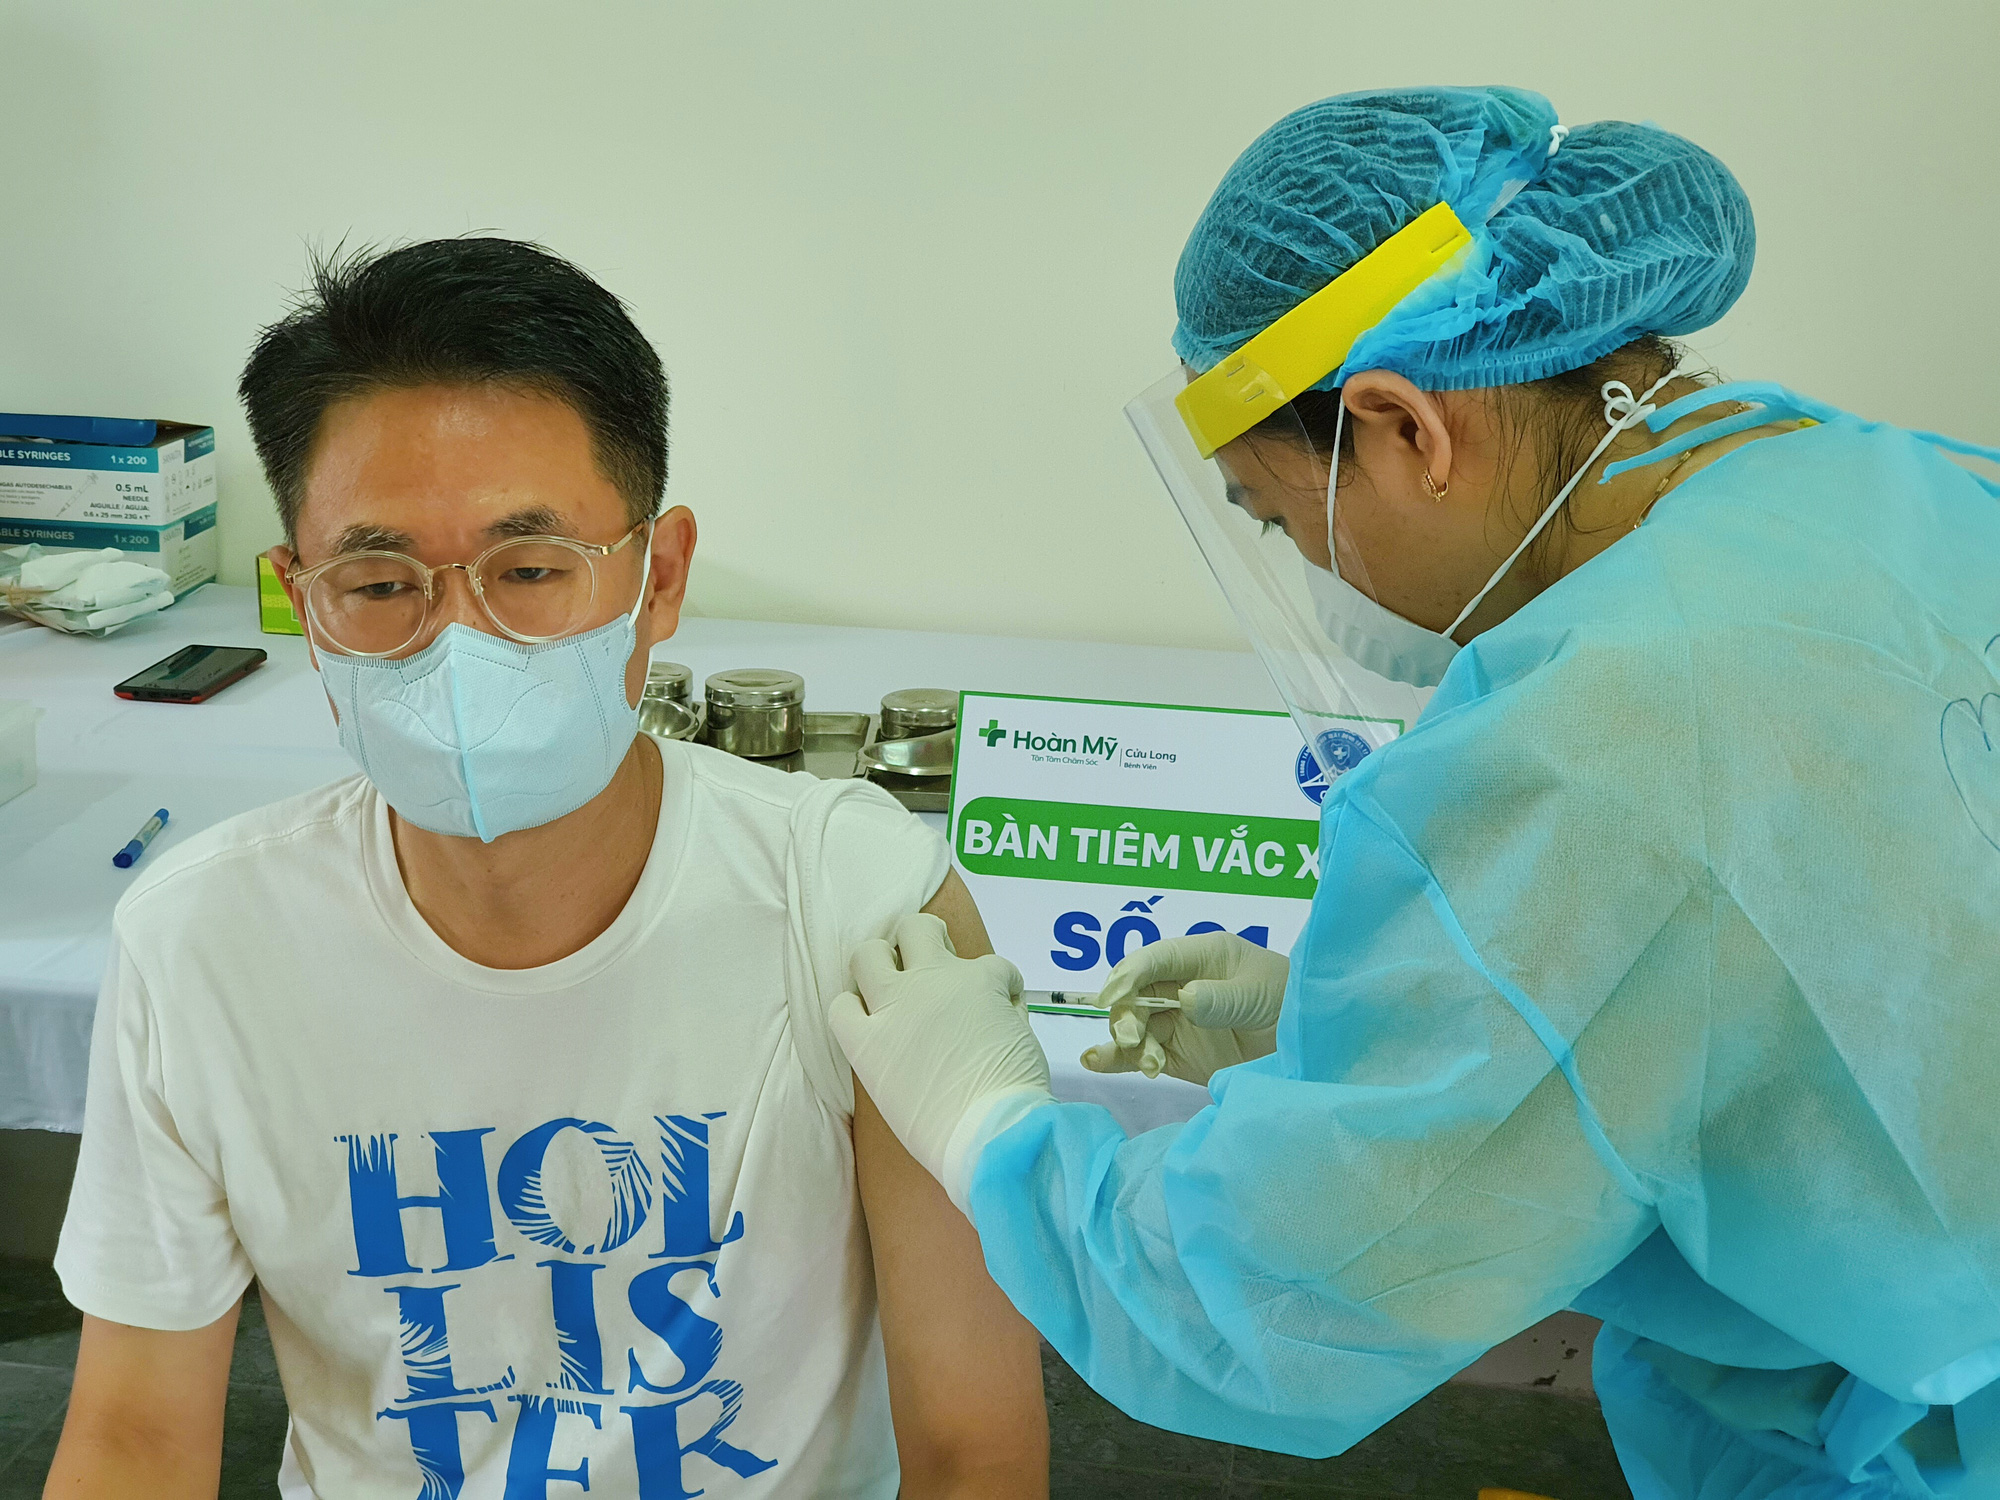 Chùm ảnh: Một bệnh viện ở Cần Thơ bắt đầu tiêm vắc-xin cho 1.800 công nhân - Ảnh 14.